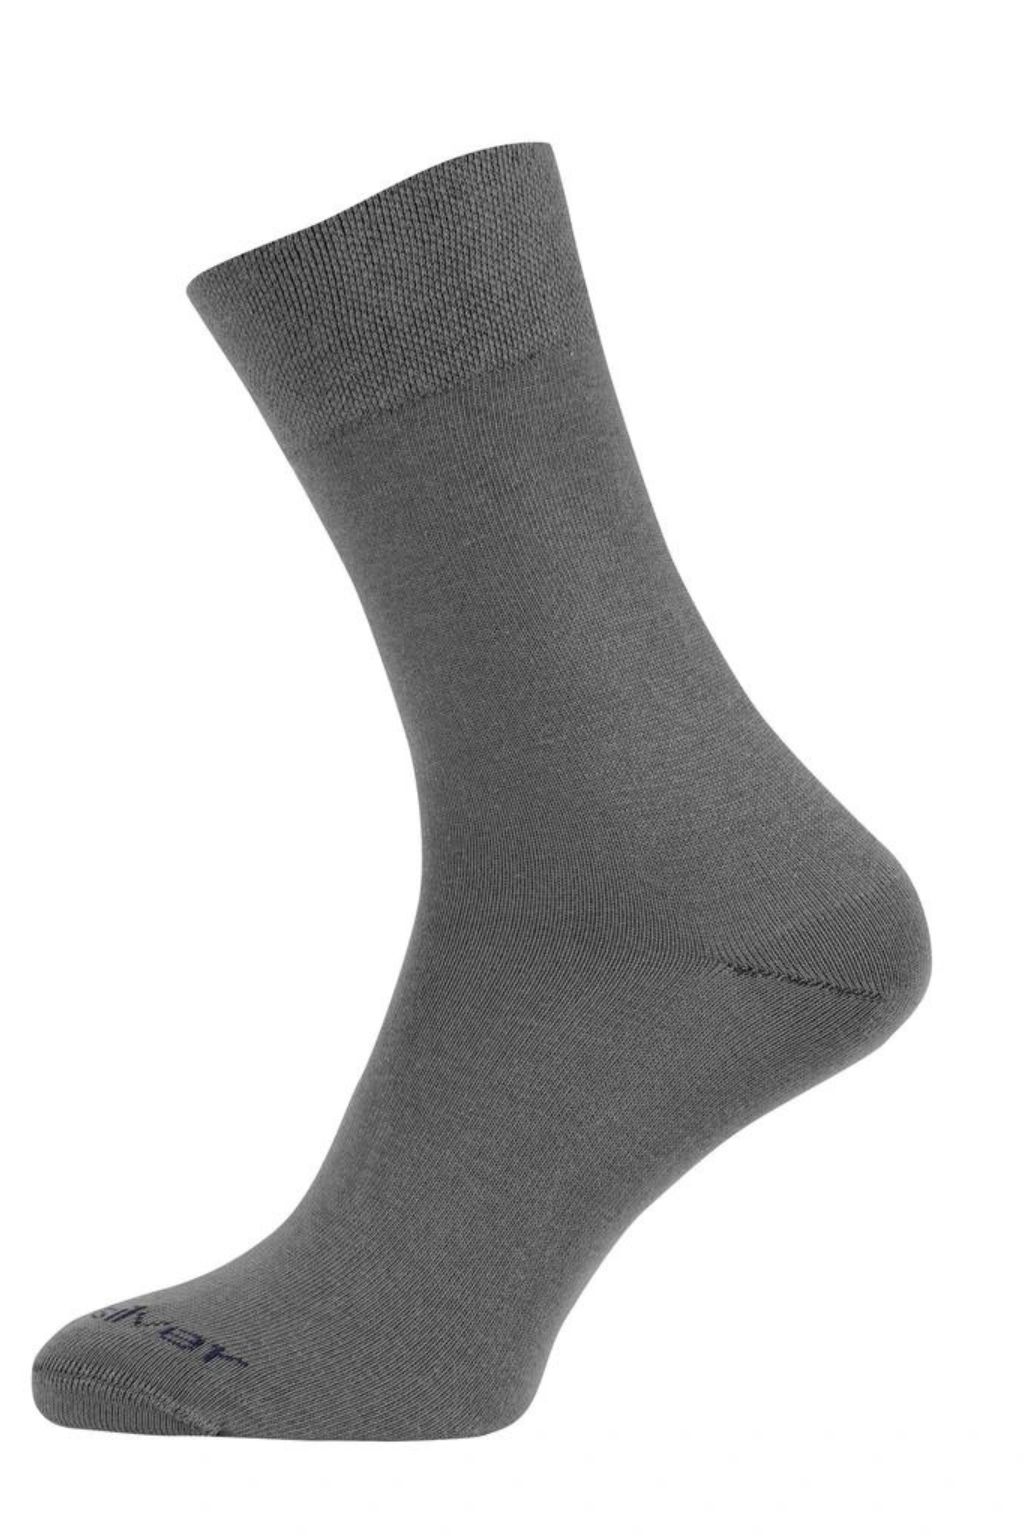 Levně nanosilver® Společenské ponožky se stříbrem nanosilver NEW šedé Velikost: XL 47/49